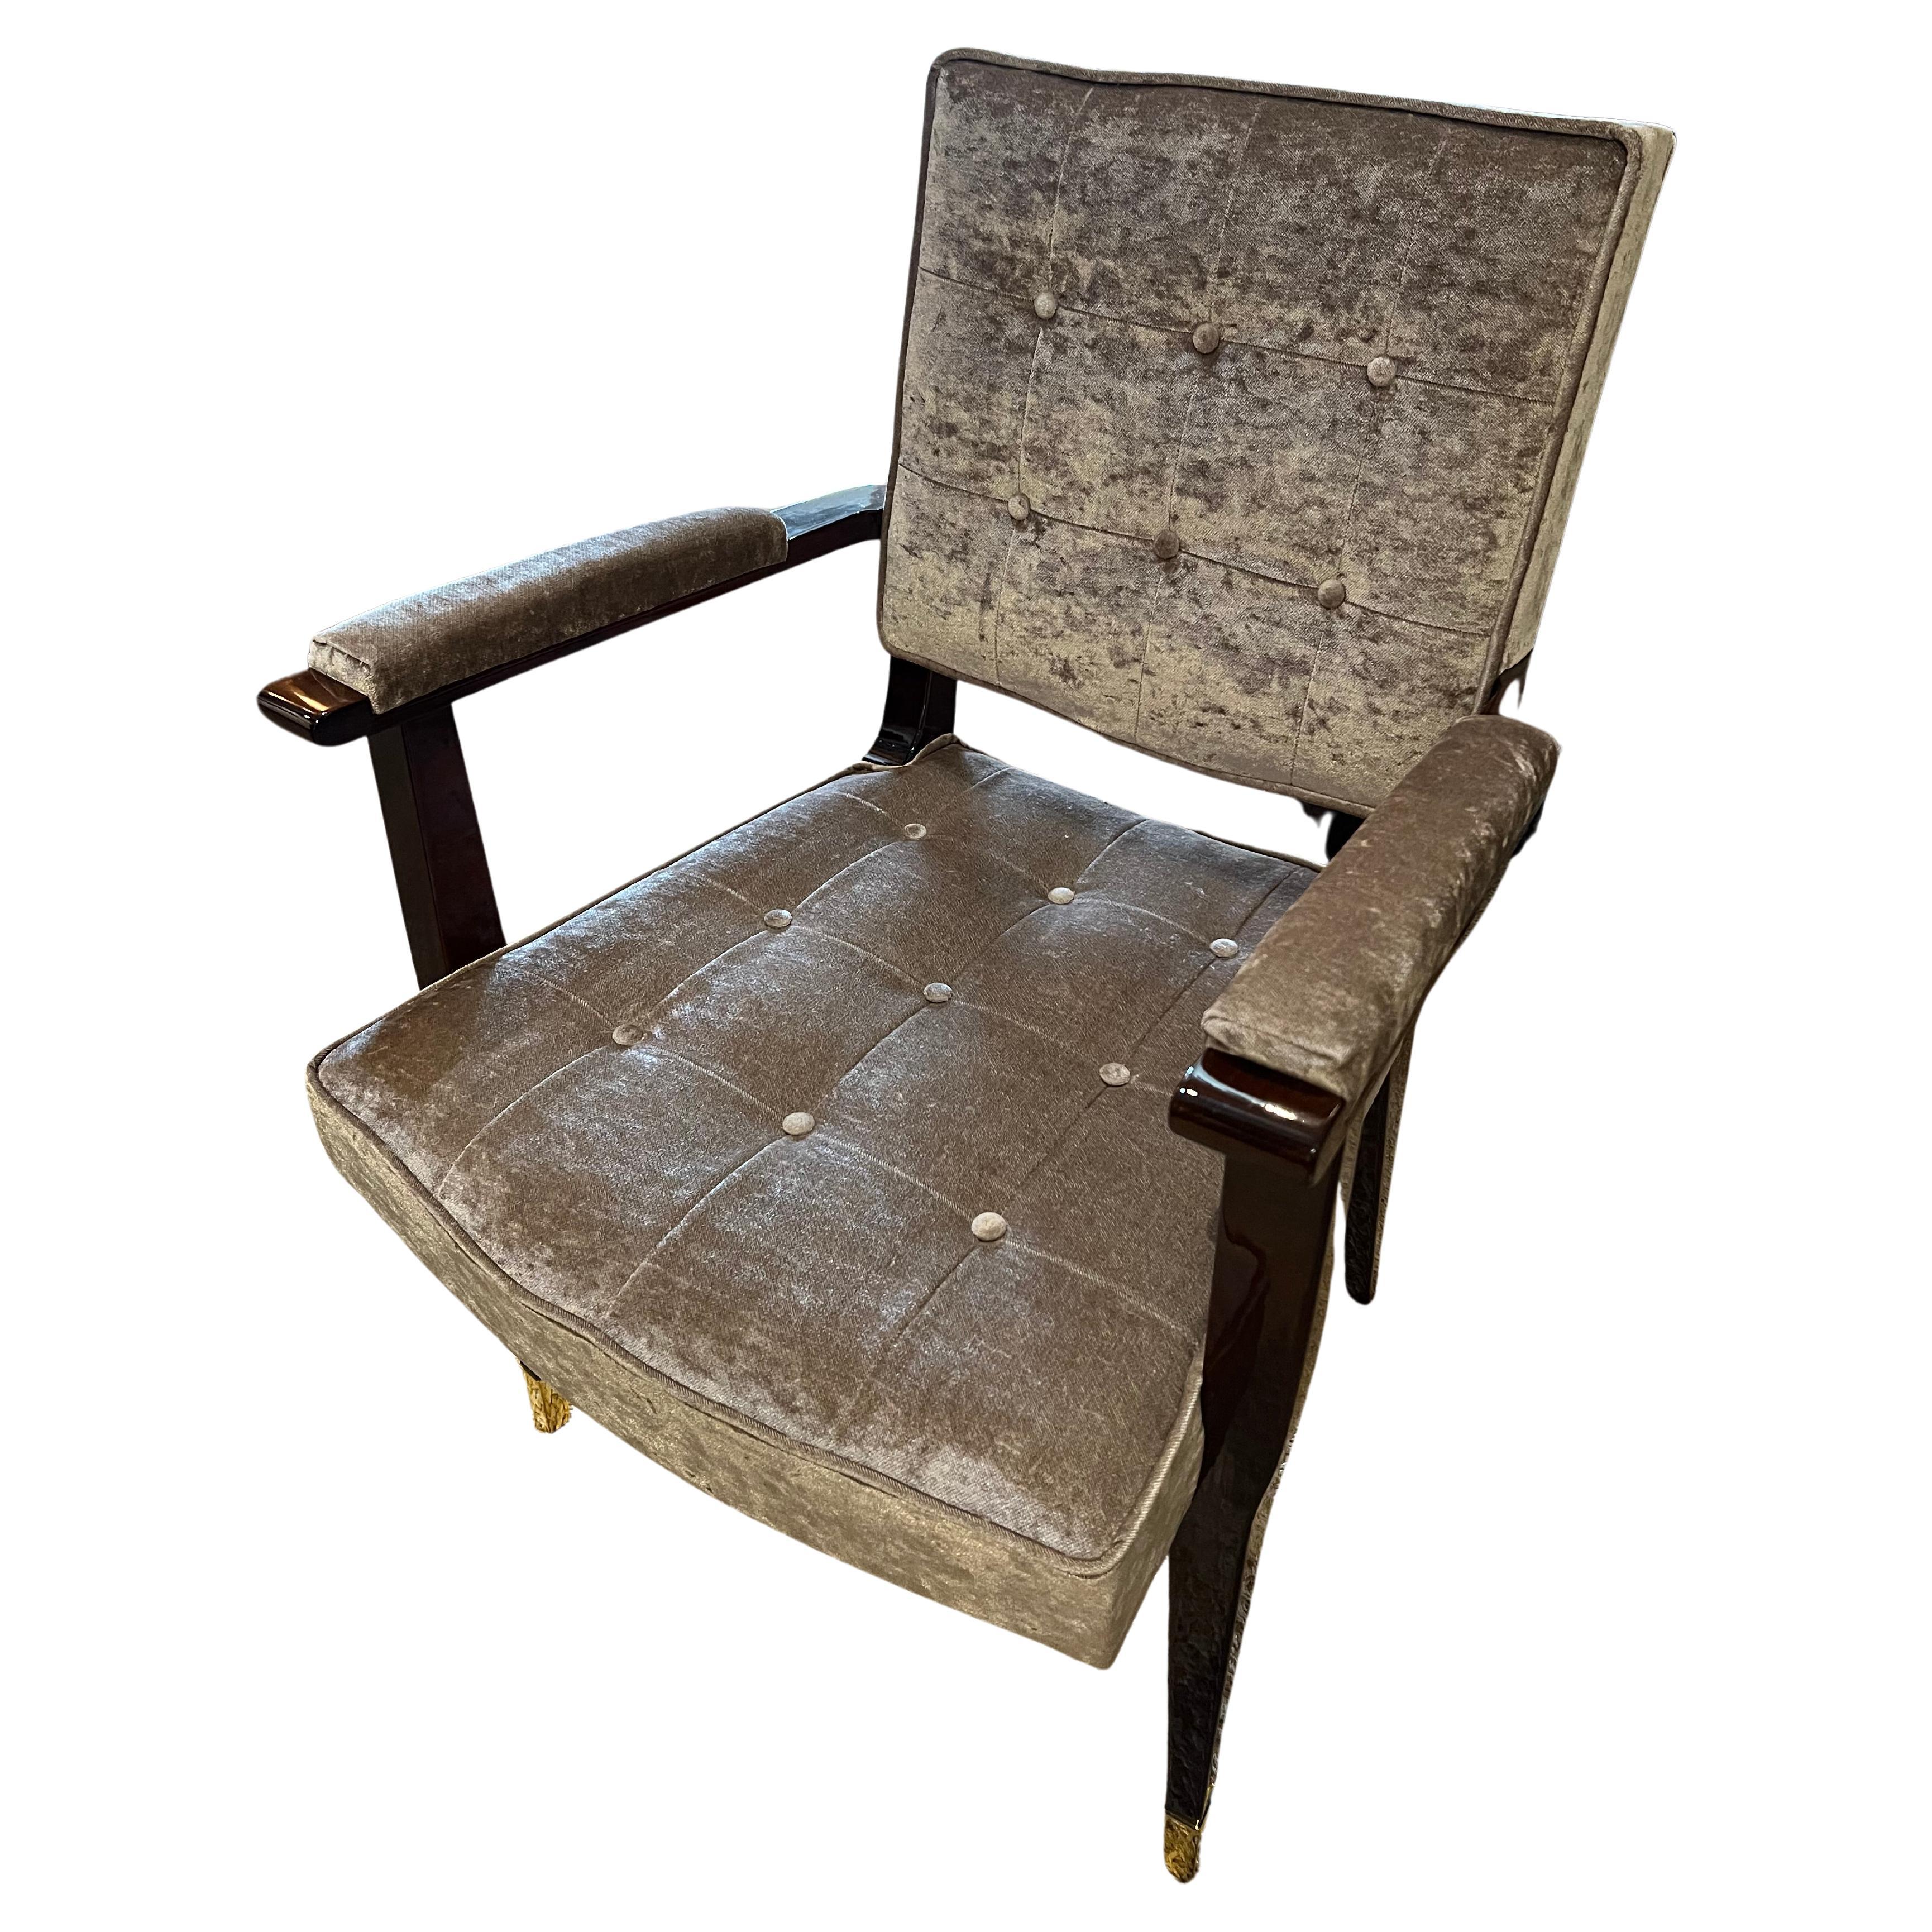 Chaise française Art déco confortable et spacieuse en bois de noyer. Nouvellement retapissé avec un tissu velouté beige clair. La chaise est soutenue par 4 pieds allongés, les extrémités des 2 pieds avant étant enveloppées d'éléments décoratifs en